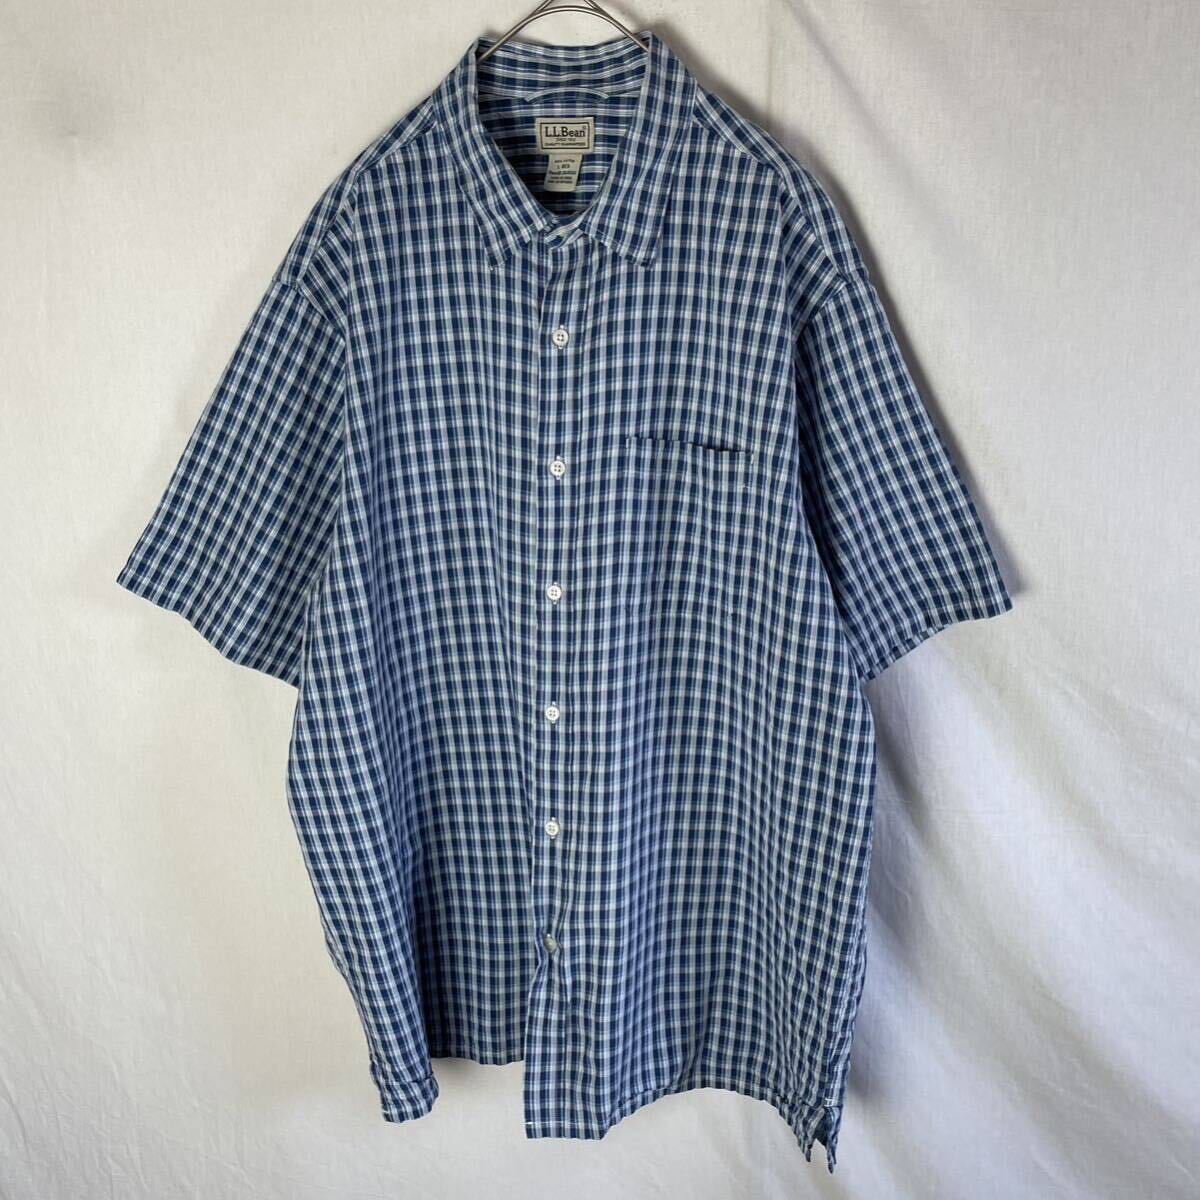 L.L.Bean 半袖チェックシャツ 古着 L-Rサイズ ネイビー の画像1